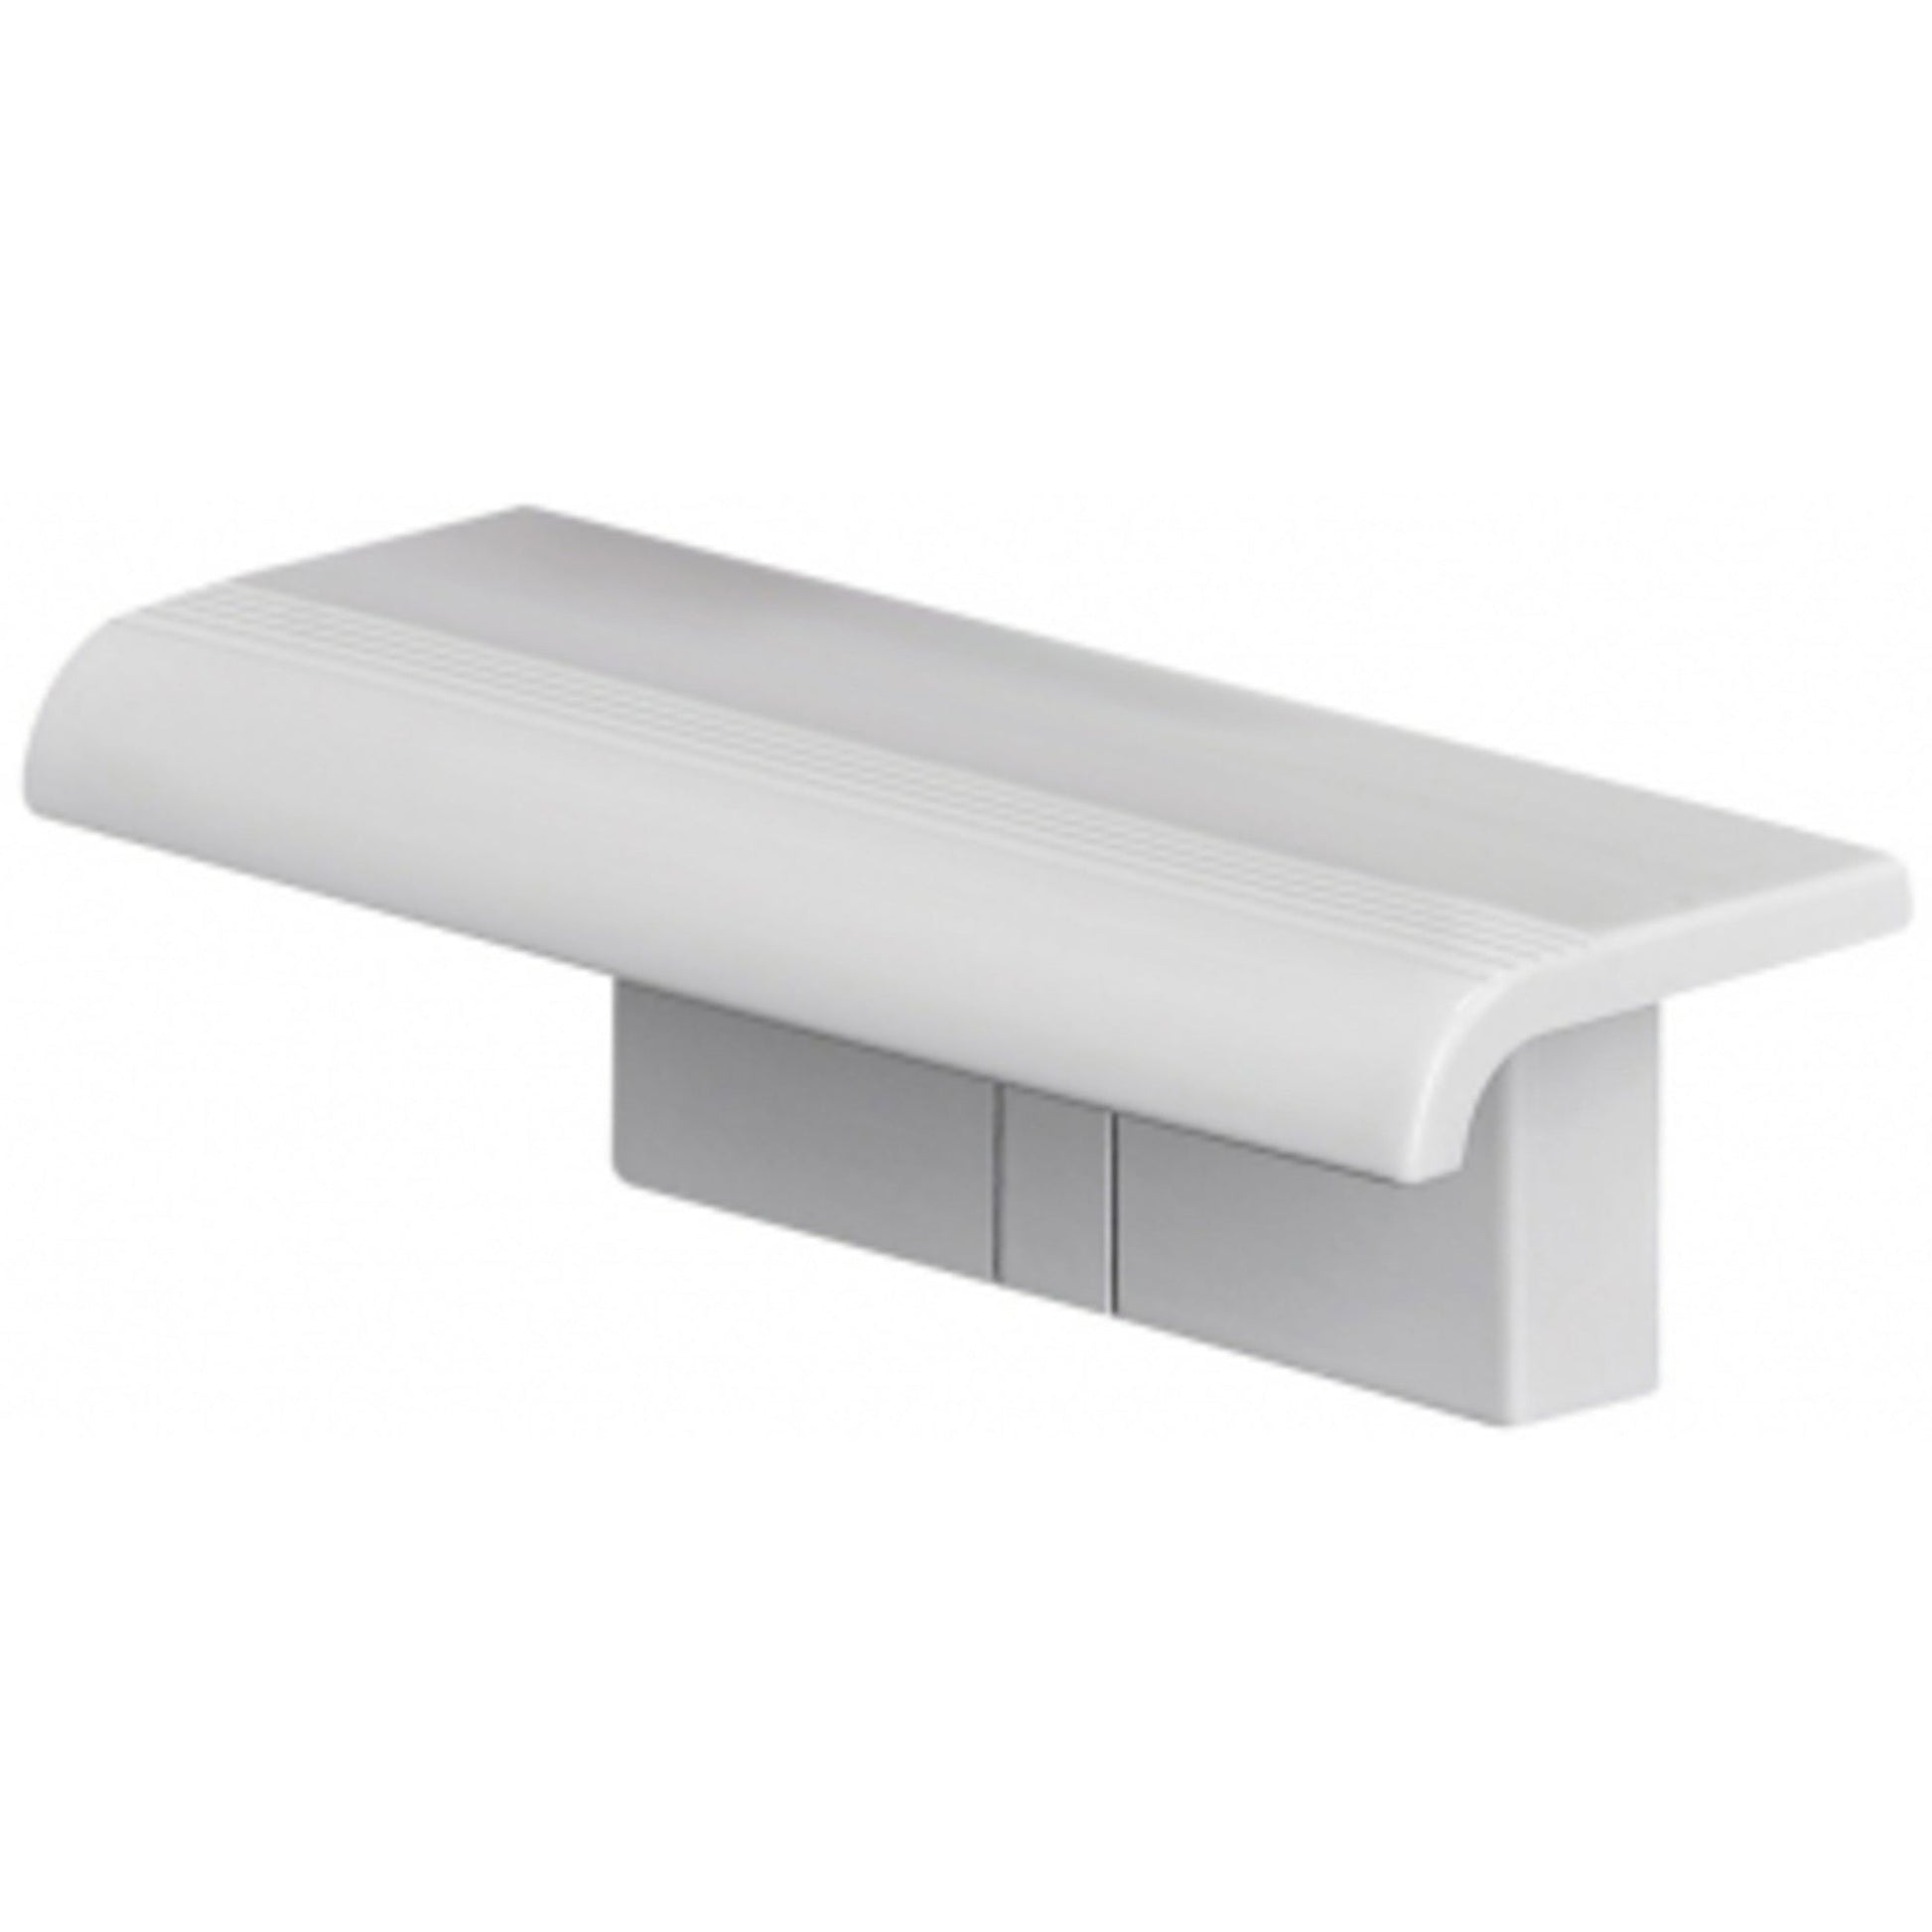 Design By Intent - Pellet Innovato 2pcs Kit White Shower Shelf and Bracket